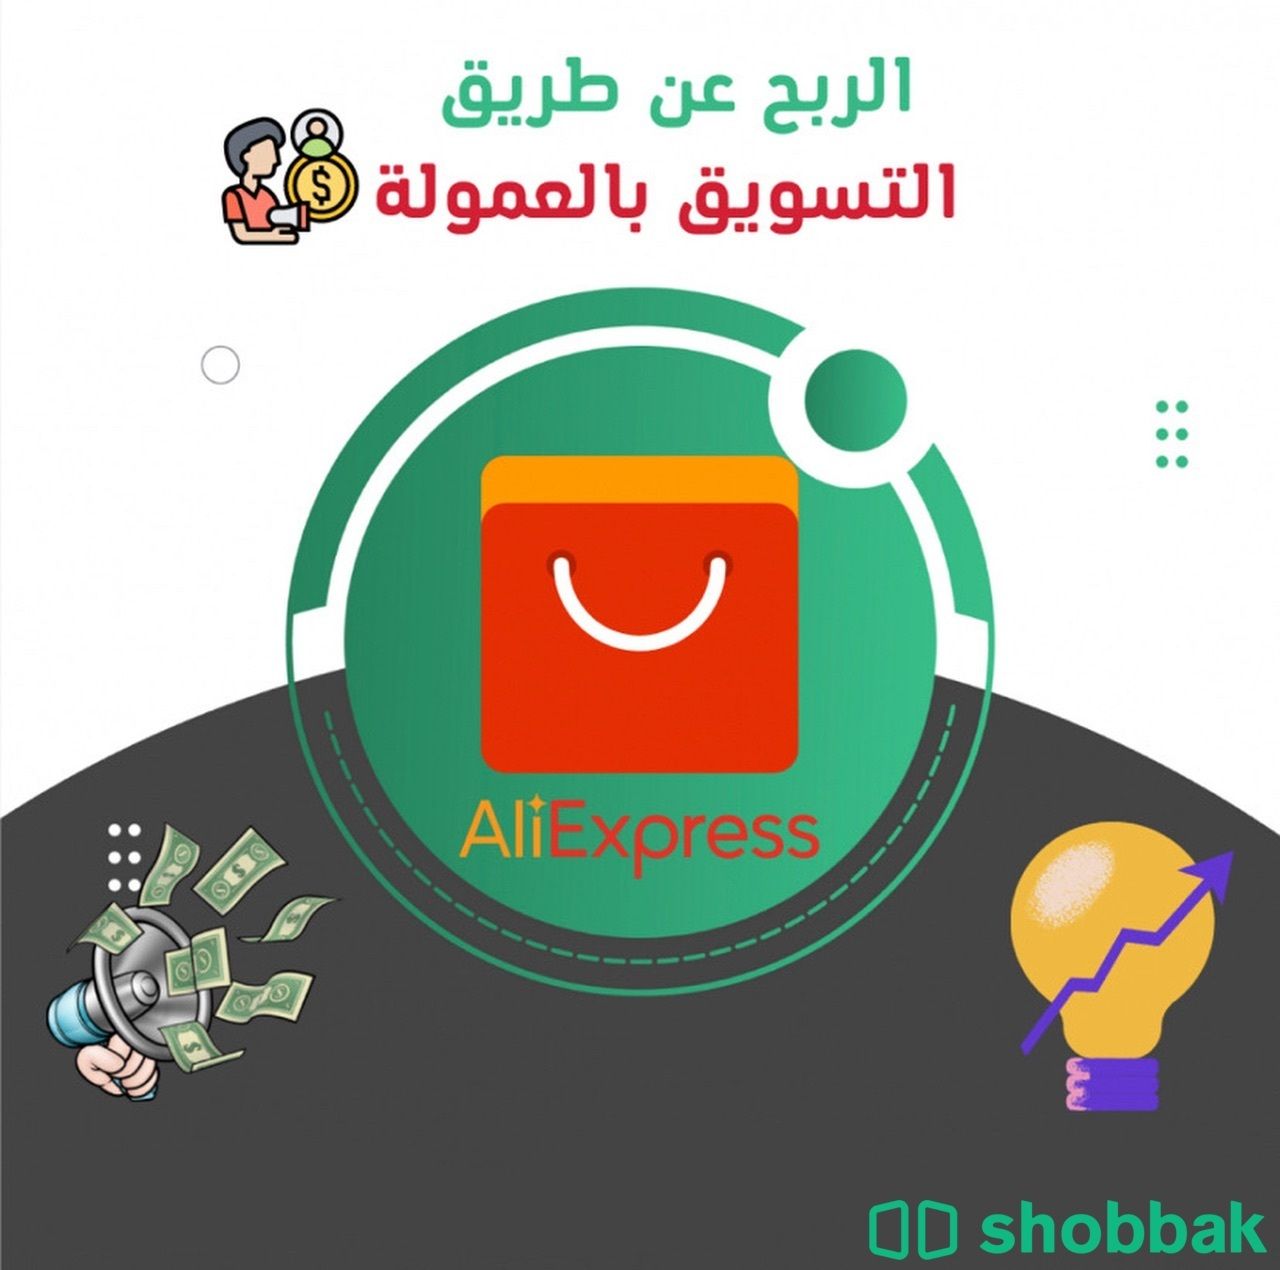 الربح عن طريق التسويق بالعمولة Shobbak Saudi Arabia